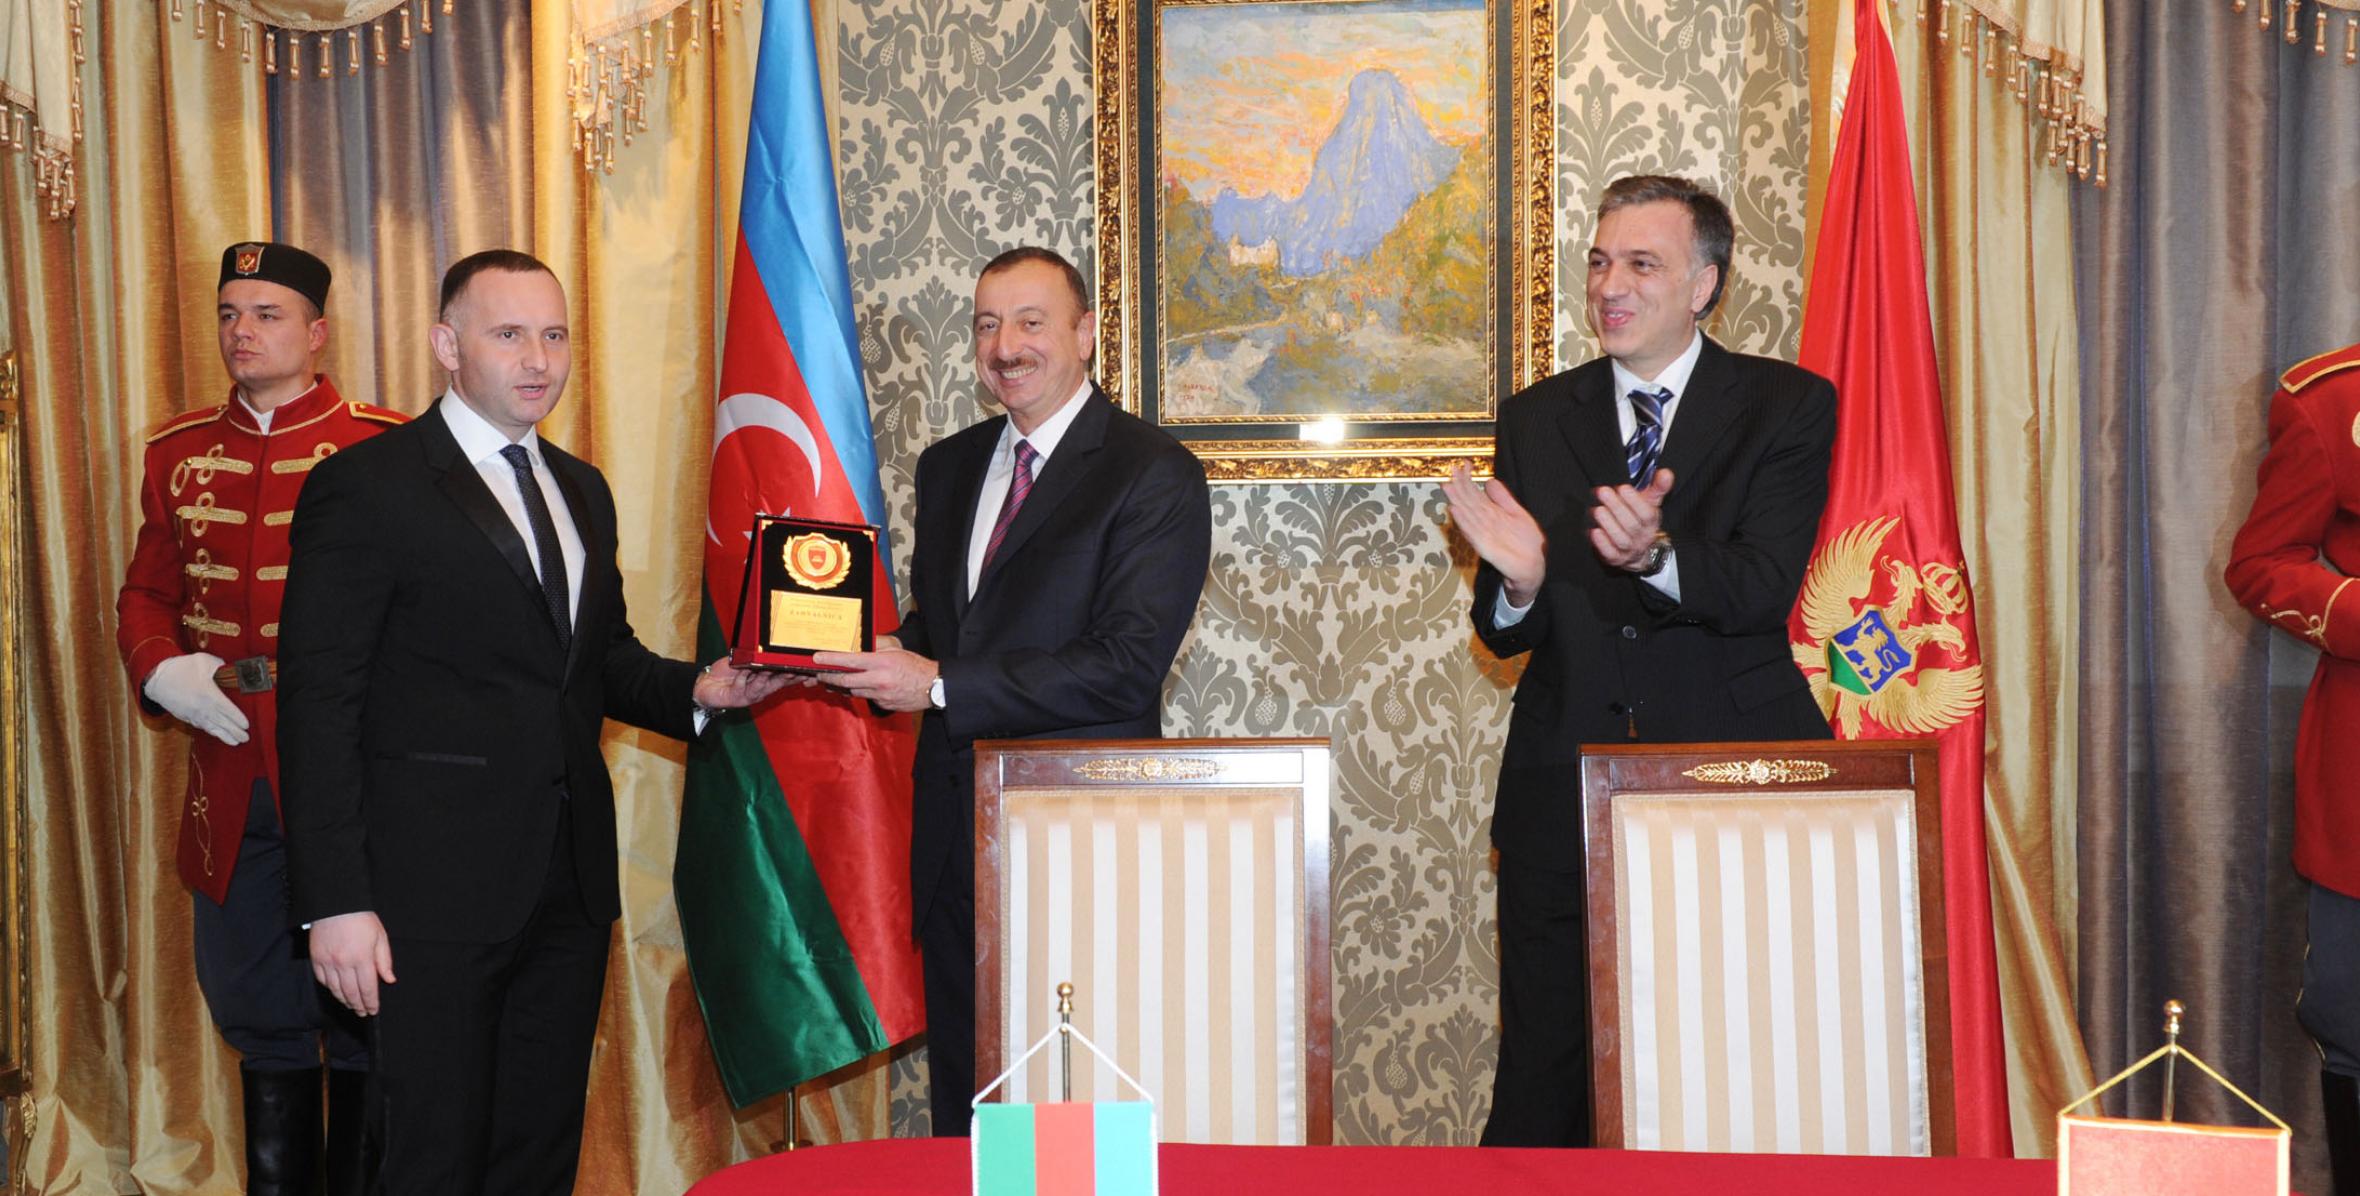 Ильхам Алиев ознакомился с проектом детского сада, который будет построен в Монтенегро при финансовой поддержке правительства Азербайджана